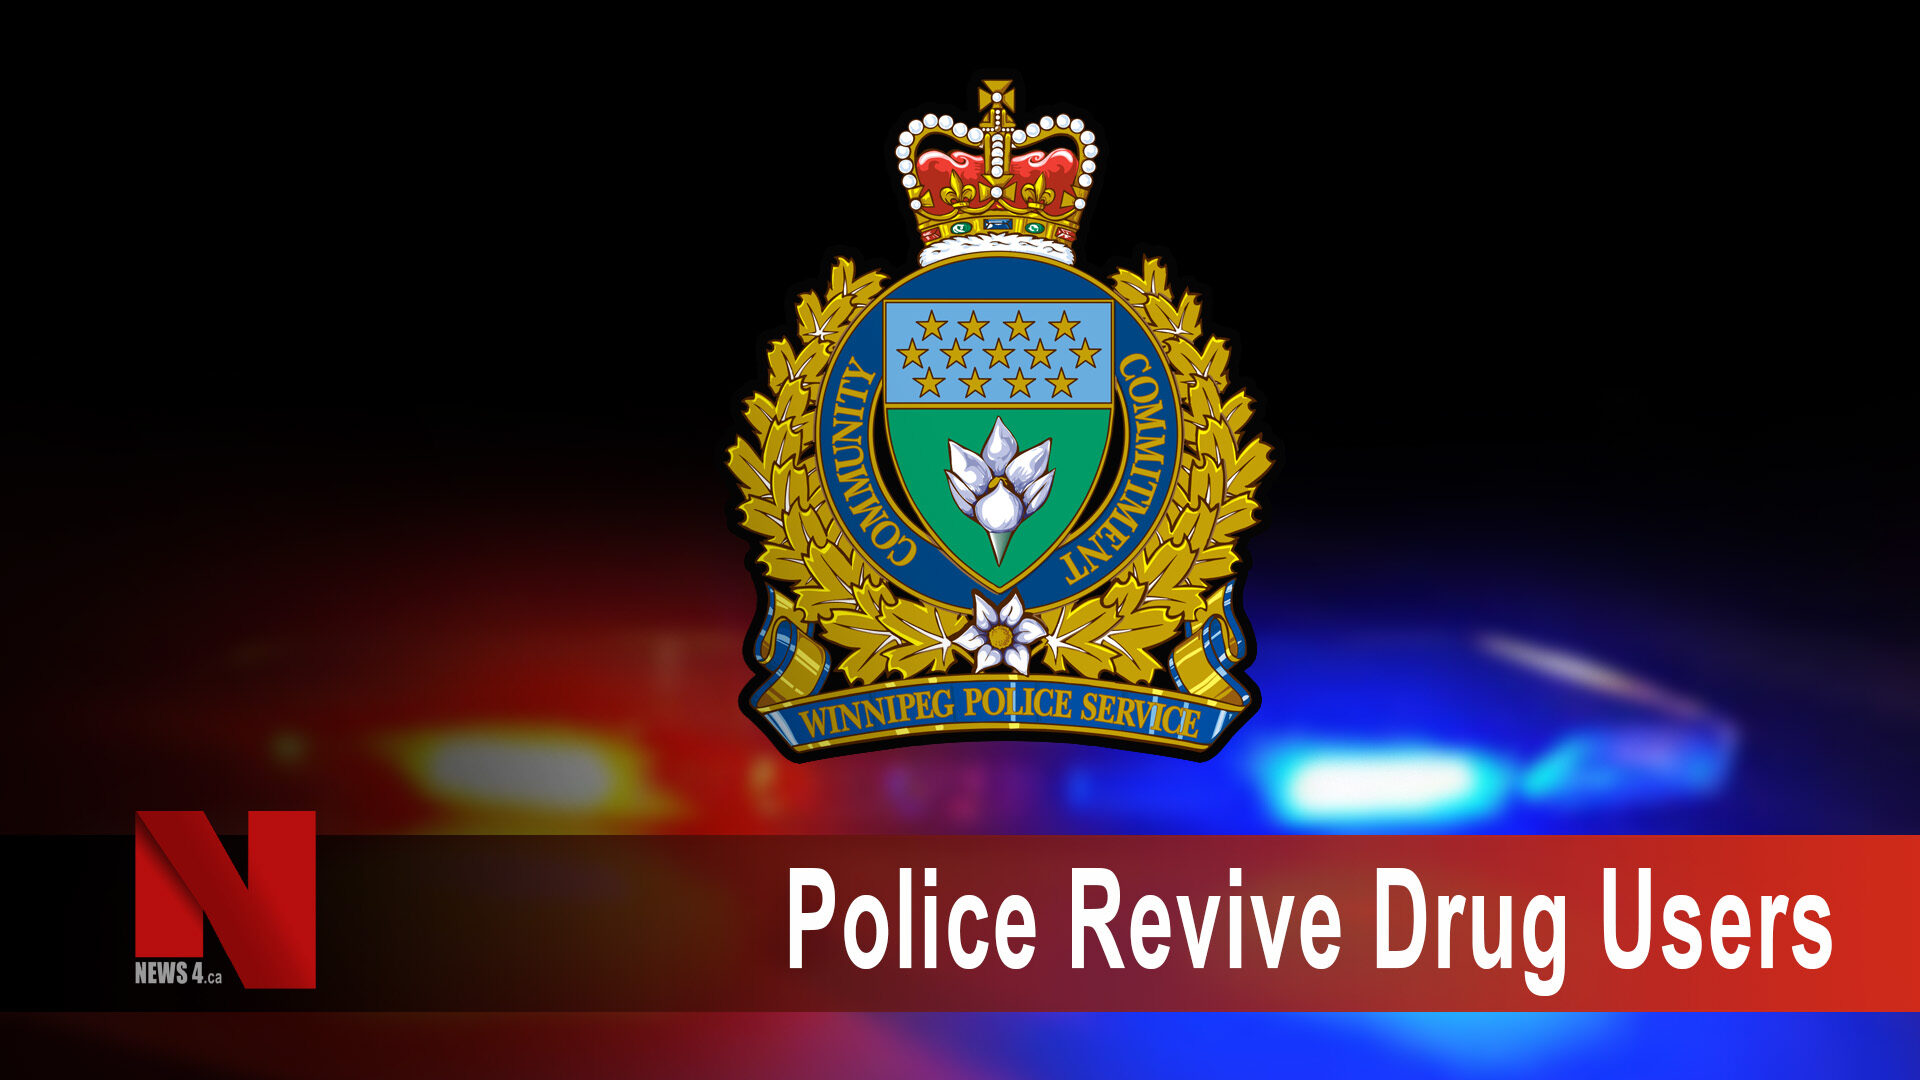 Police revive drug users